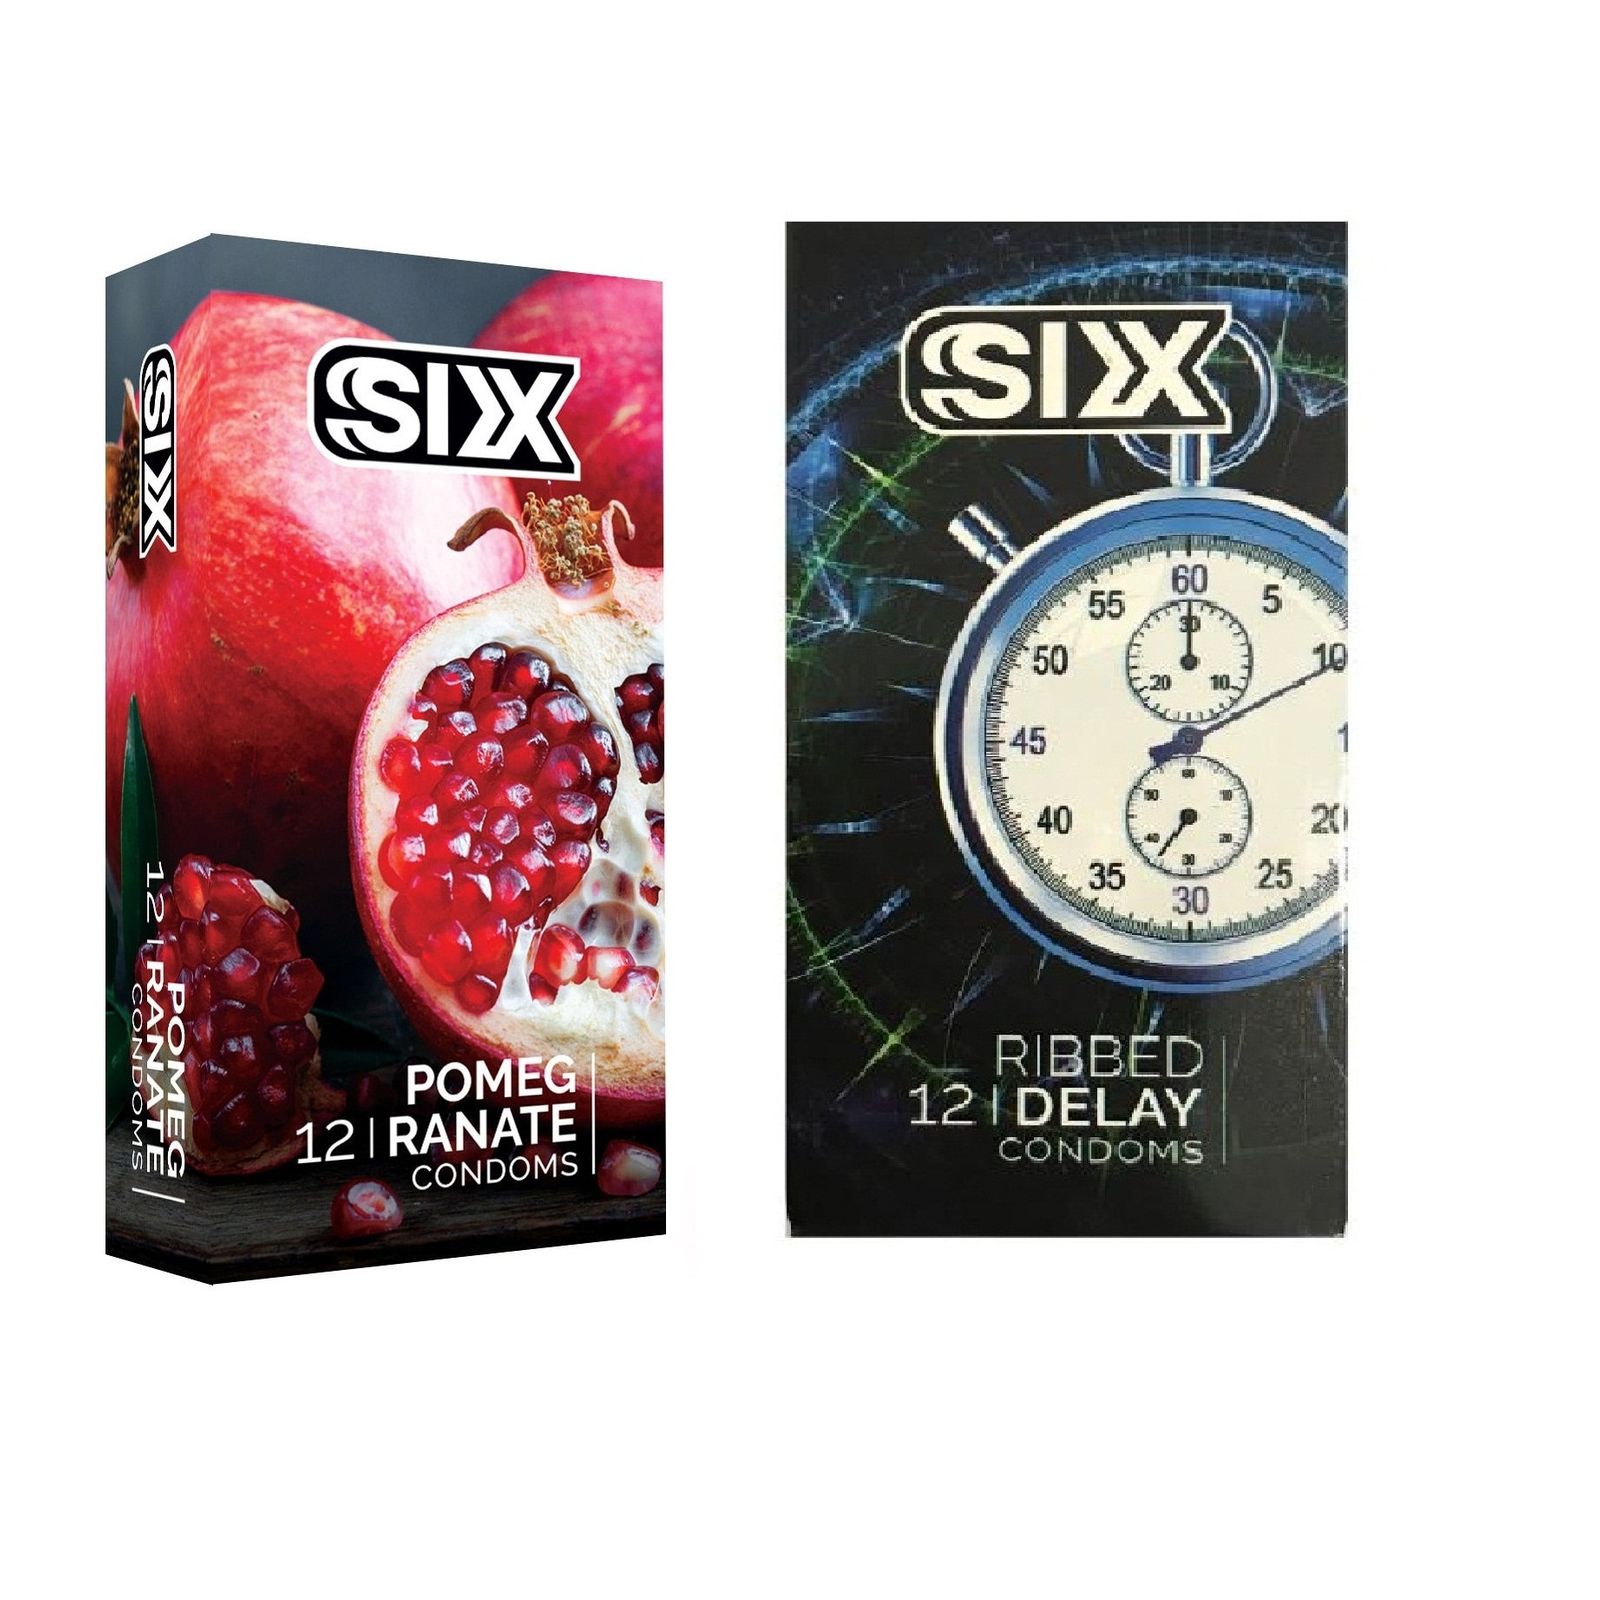 کاندوم سیکس مدل Pomegranate بسته 12 عددی به همراه کاندوم سیکس مدل Ribbed Delay بسته 12 عددی